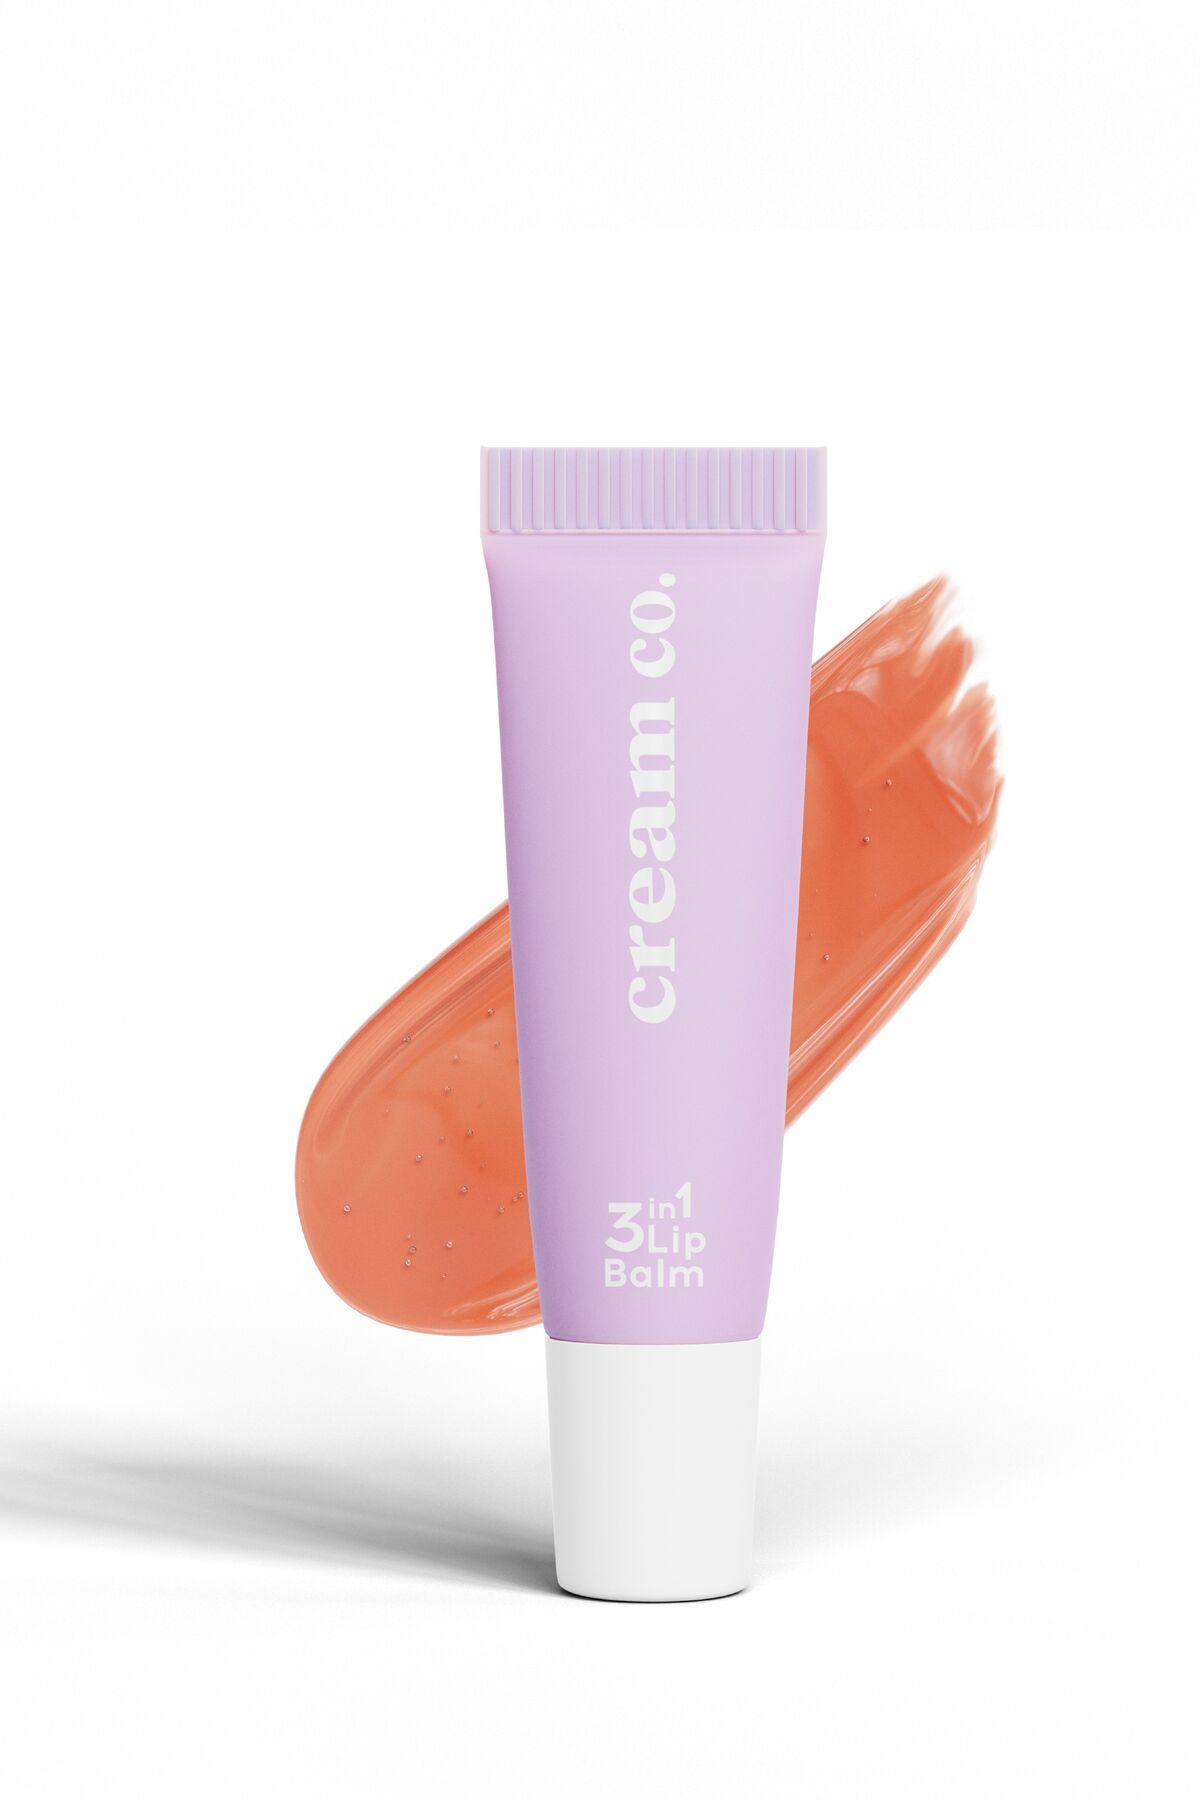 Cream Co. Onarıcı Besleyici Dudak Bakım Parlatıcı Nemlendirici Bej Renkli Kurabiye Aromalı 3in1 Lip Balm 403